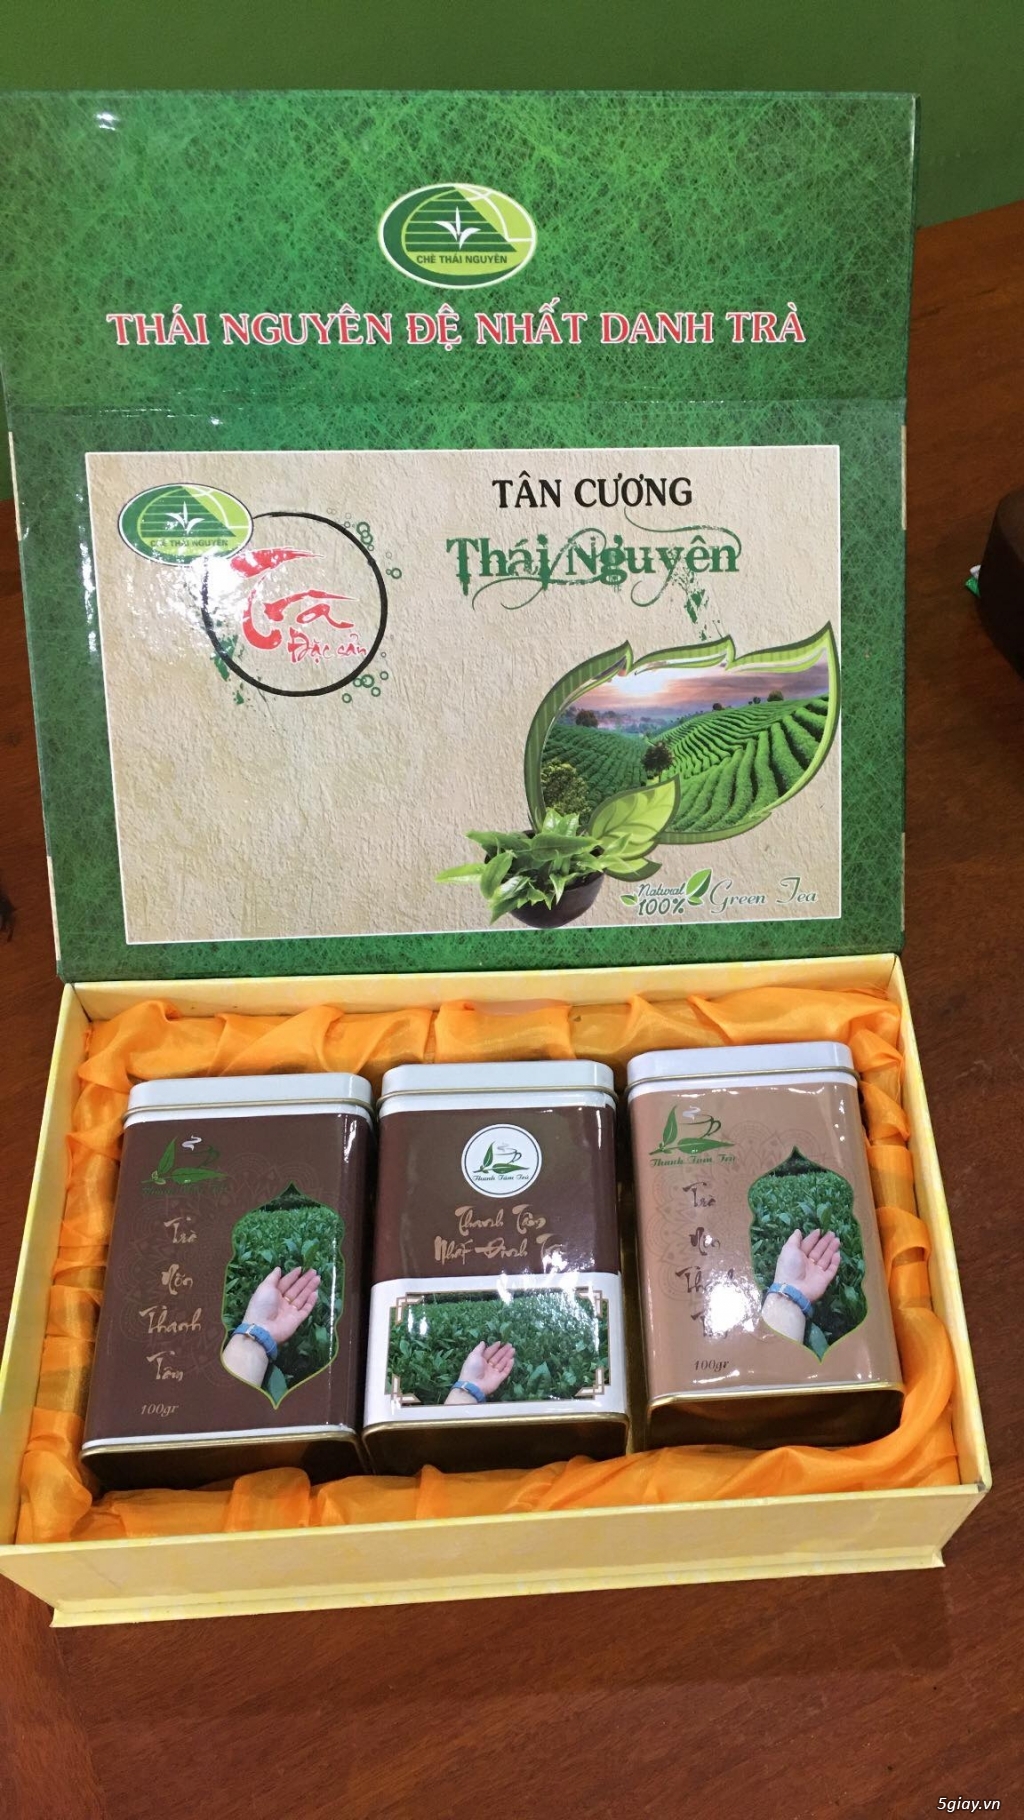 Trà xanh Thái Nguyên ở Hồ Chí Minh đúng chuẩn vị trà truyền thống - 1